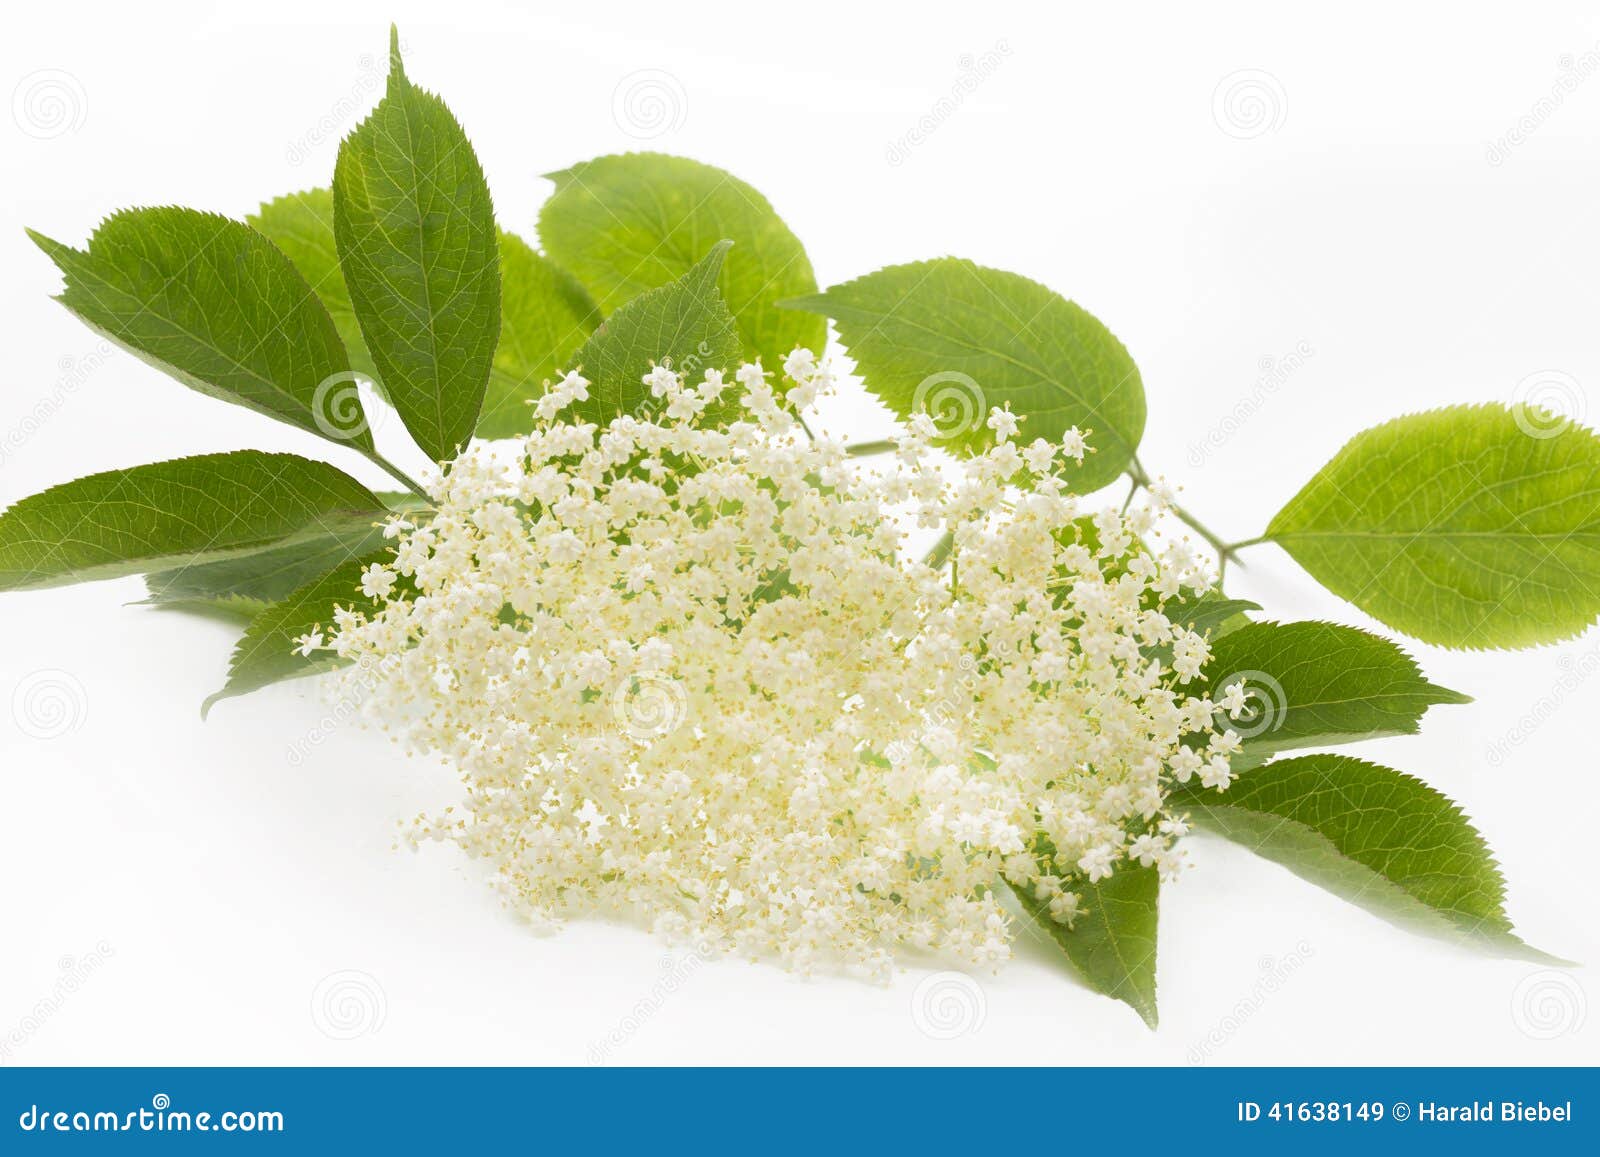 Elderflower on White Background Stock Image - Image of flower, blooming ...